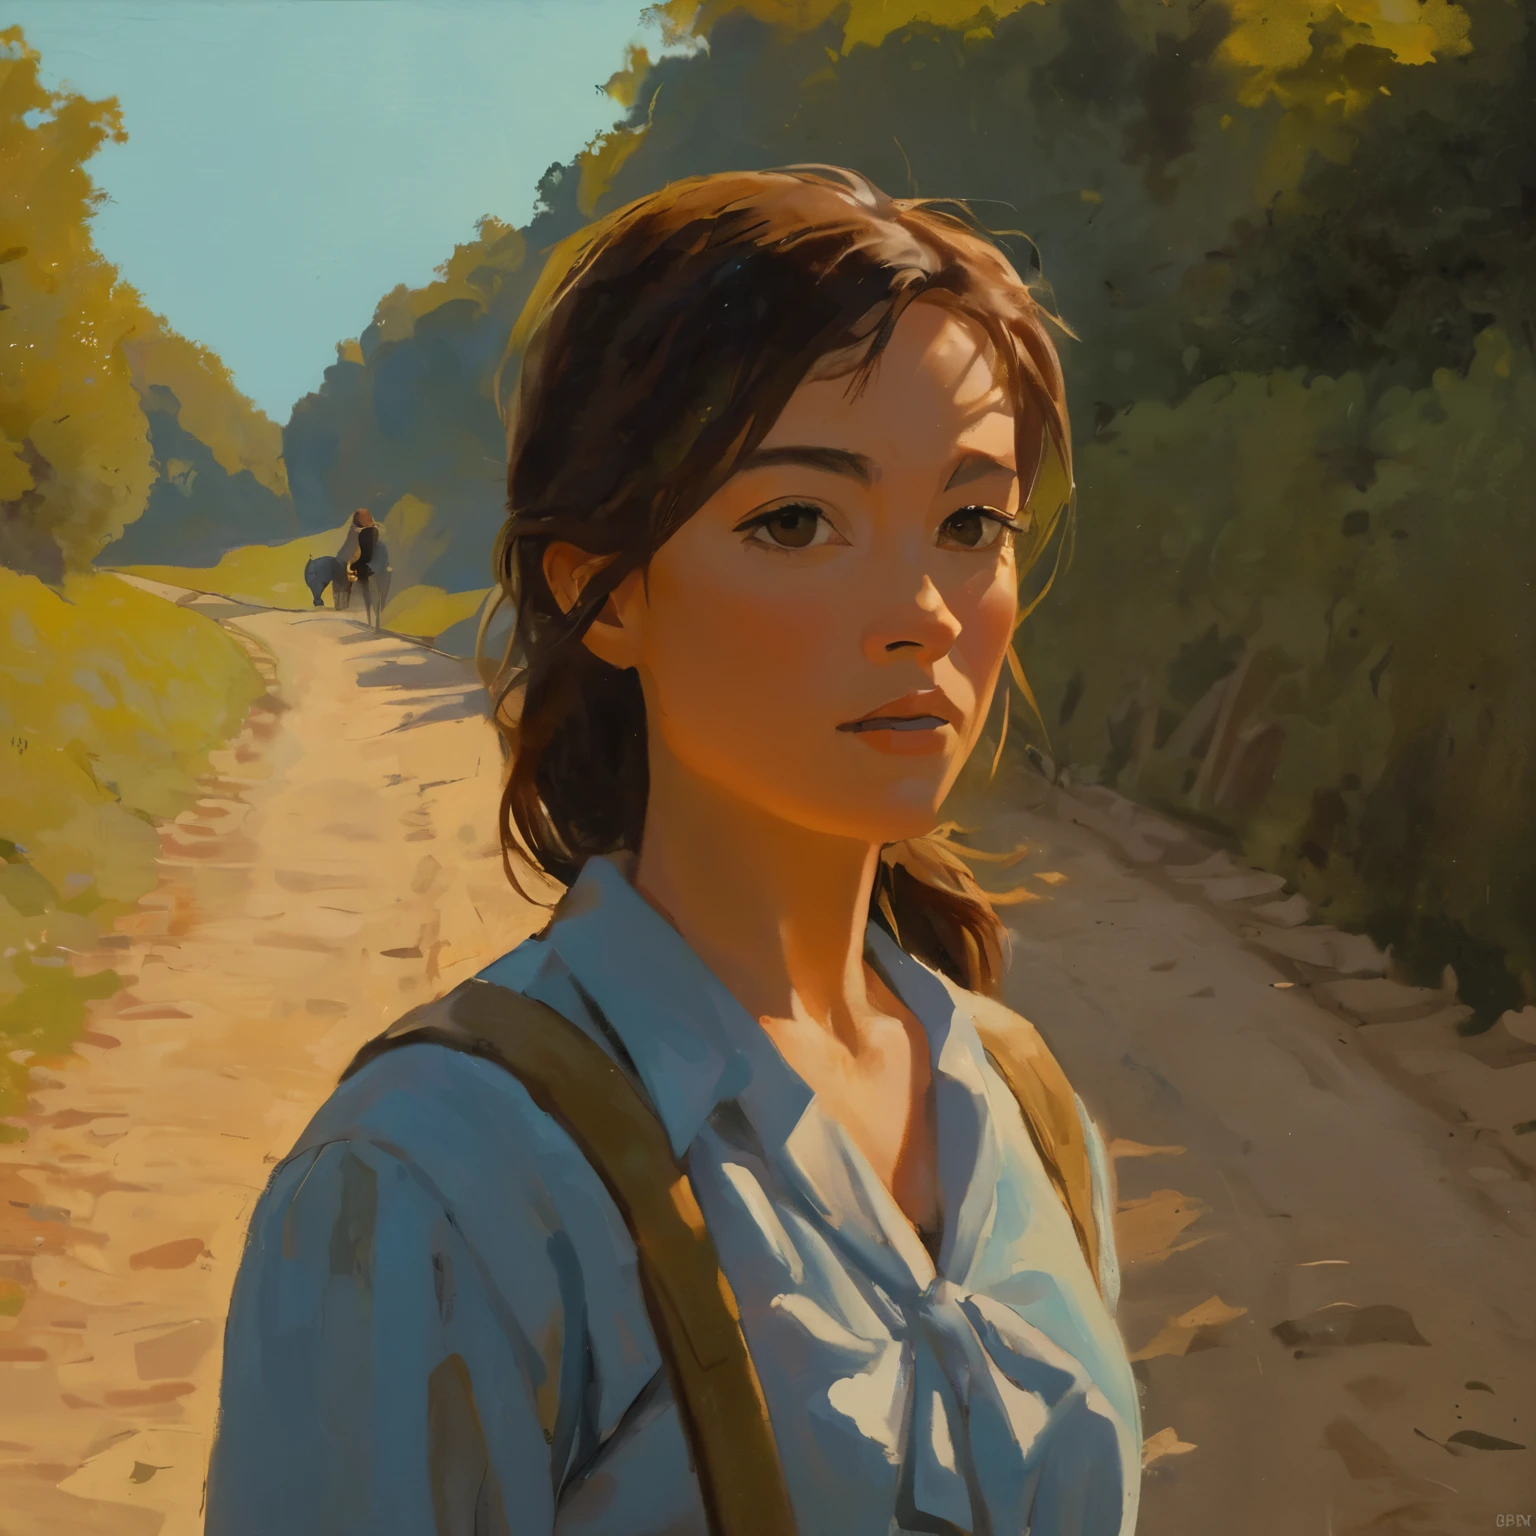 cinematográfico, Um retrato aproximado de uma jovem caminhando em uma colina com uma bela luz e cena, pintura mestre, Mitaka Asa cabelo com rabo de cavalo longo sem roupa